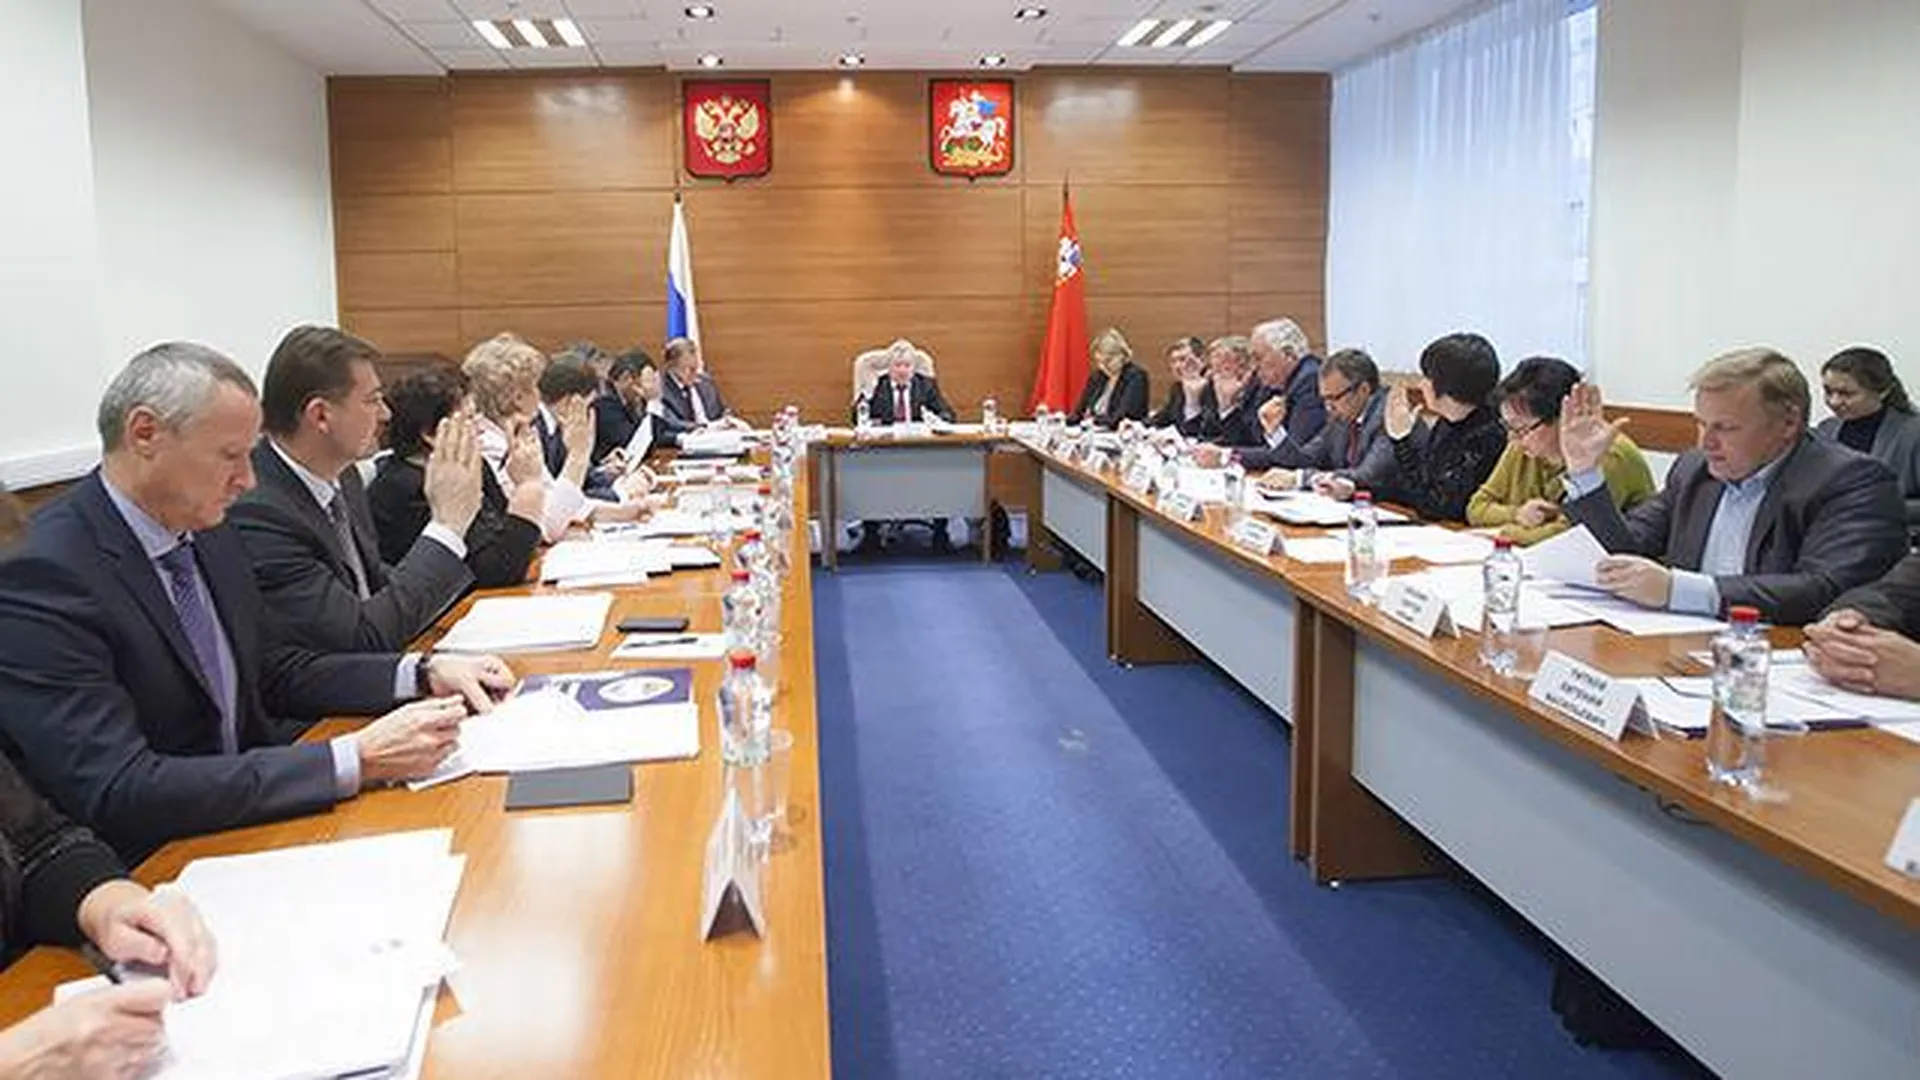 Совет муниципальных образований региона обновил состав